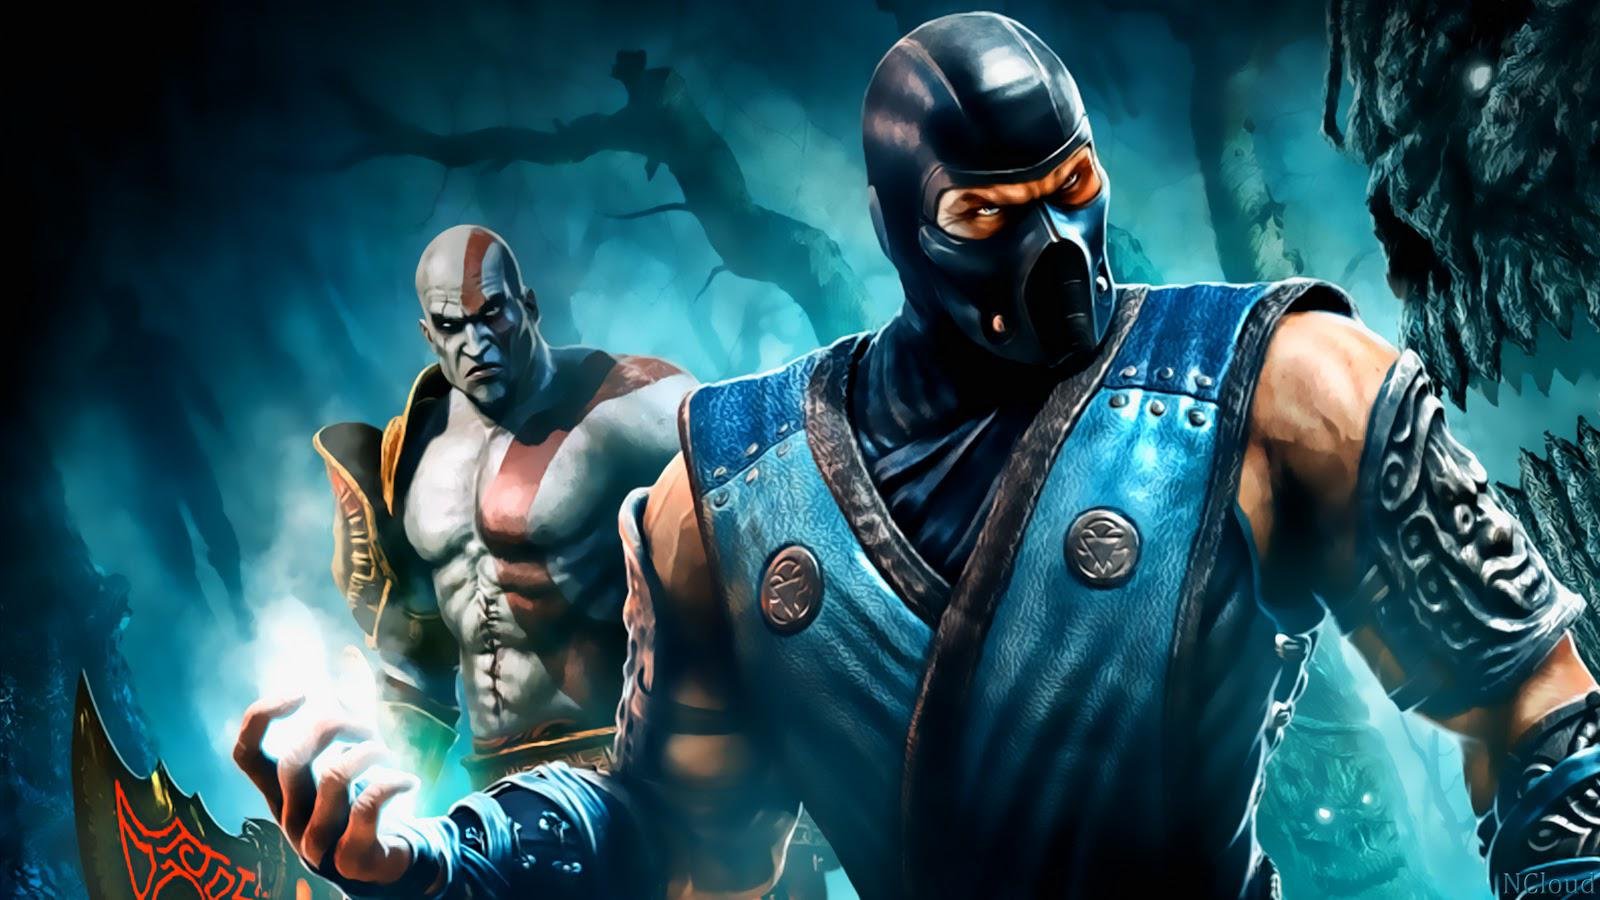 Como é jogar Mortal Kombat 4 do PLAYSTATION hoje? É TUDO ESTRANHO